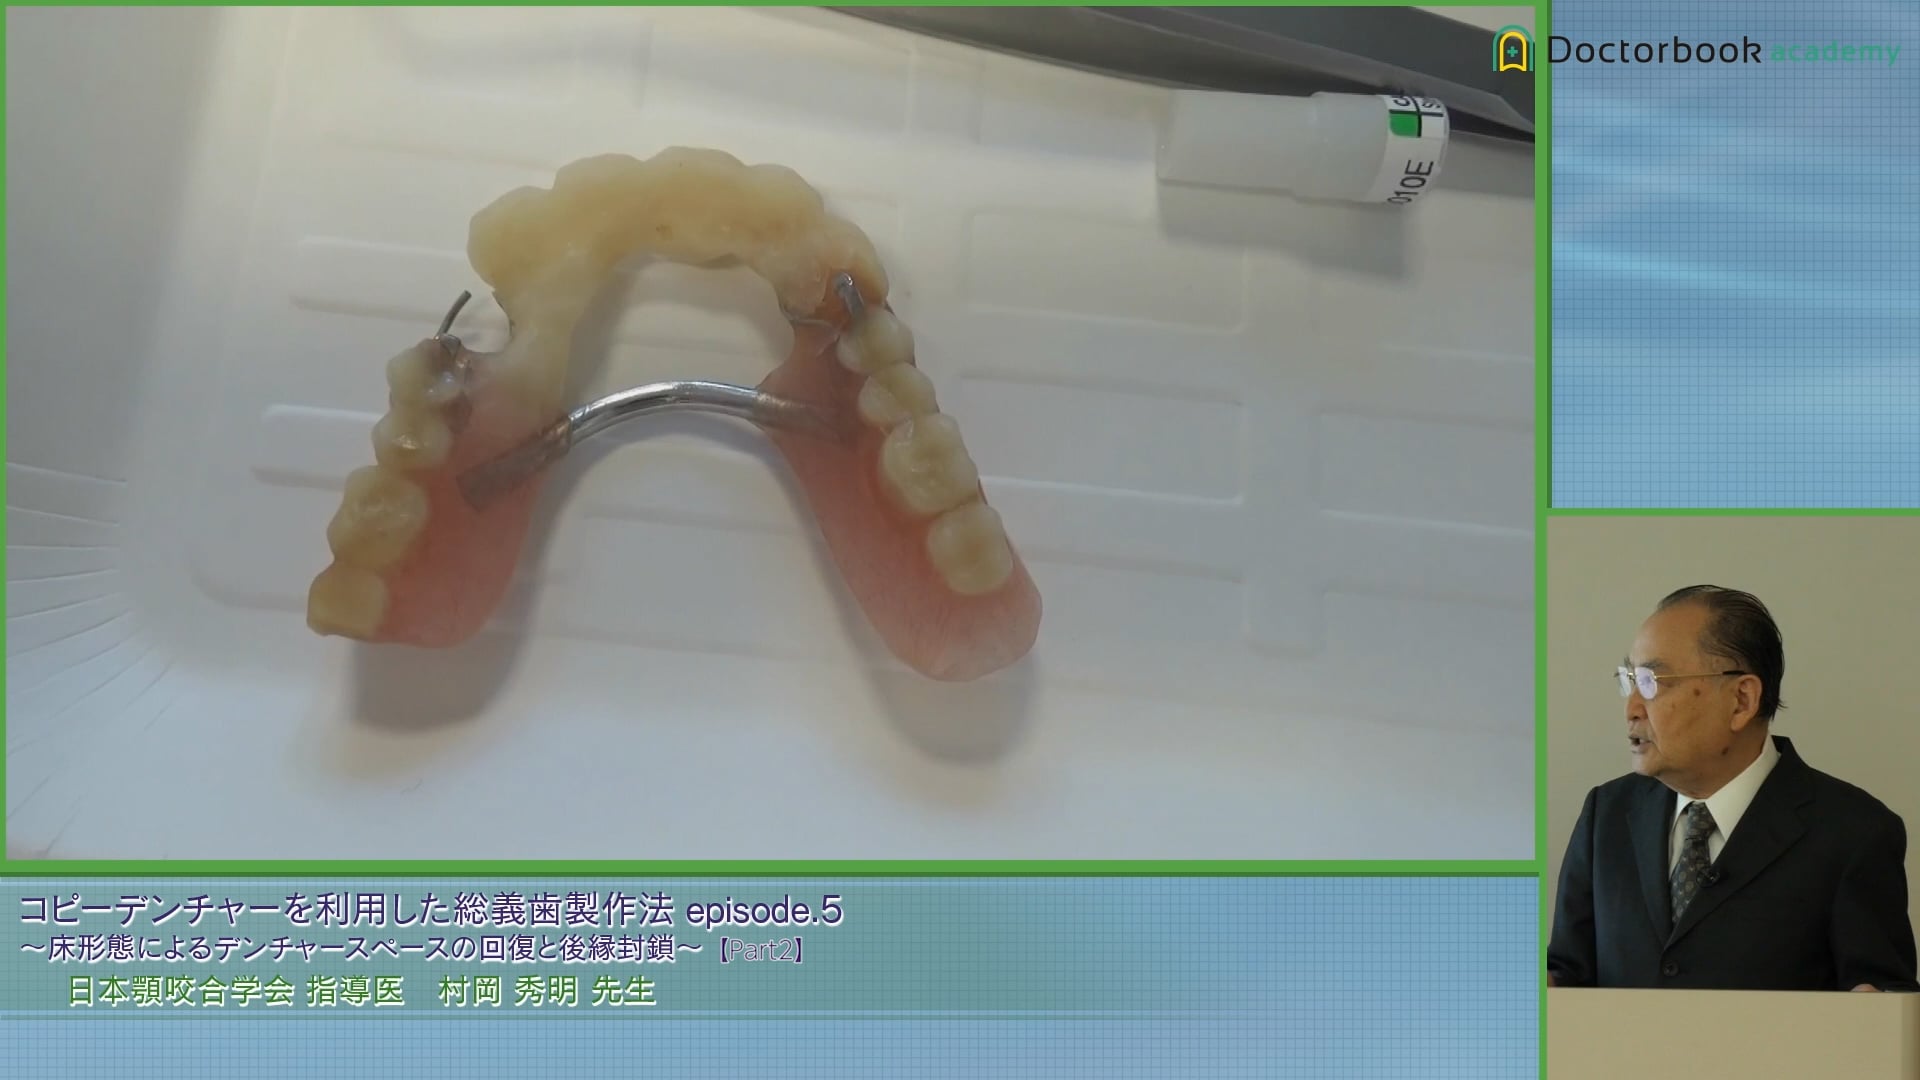 上顎総義歯のコピーデンチャーの作成方法とデンチャースペースの回復 #2